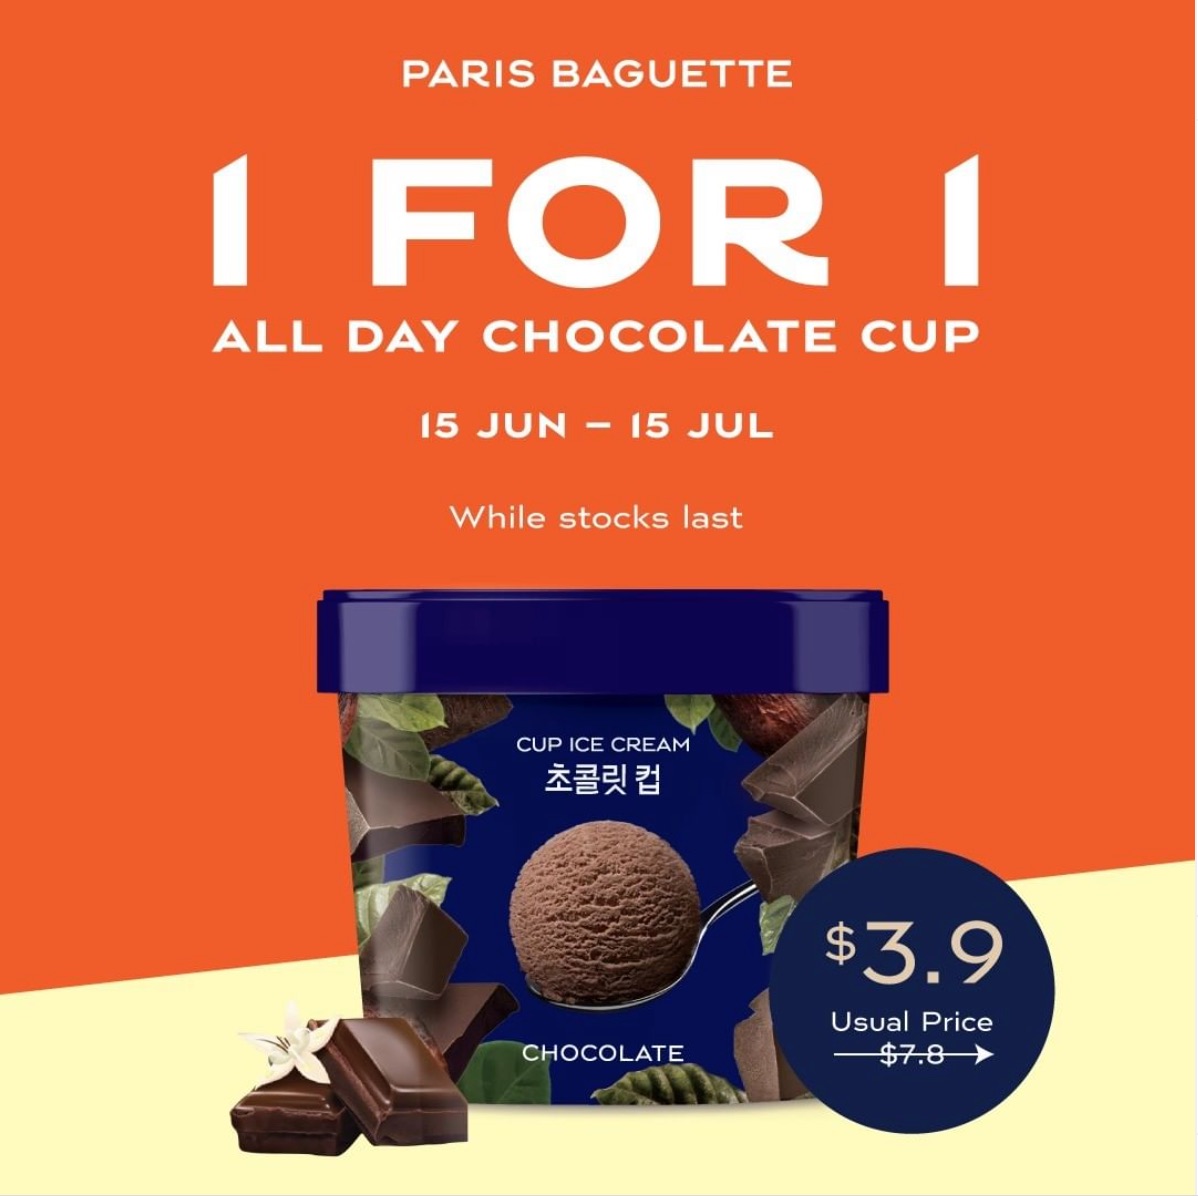 Paris Baguette promo - 1-For-1